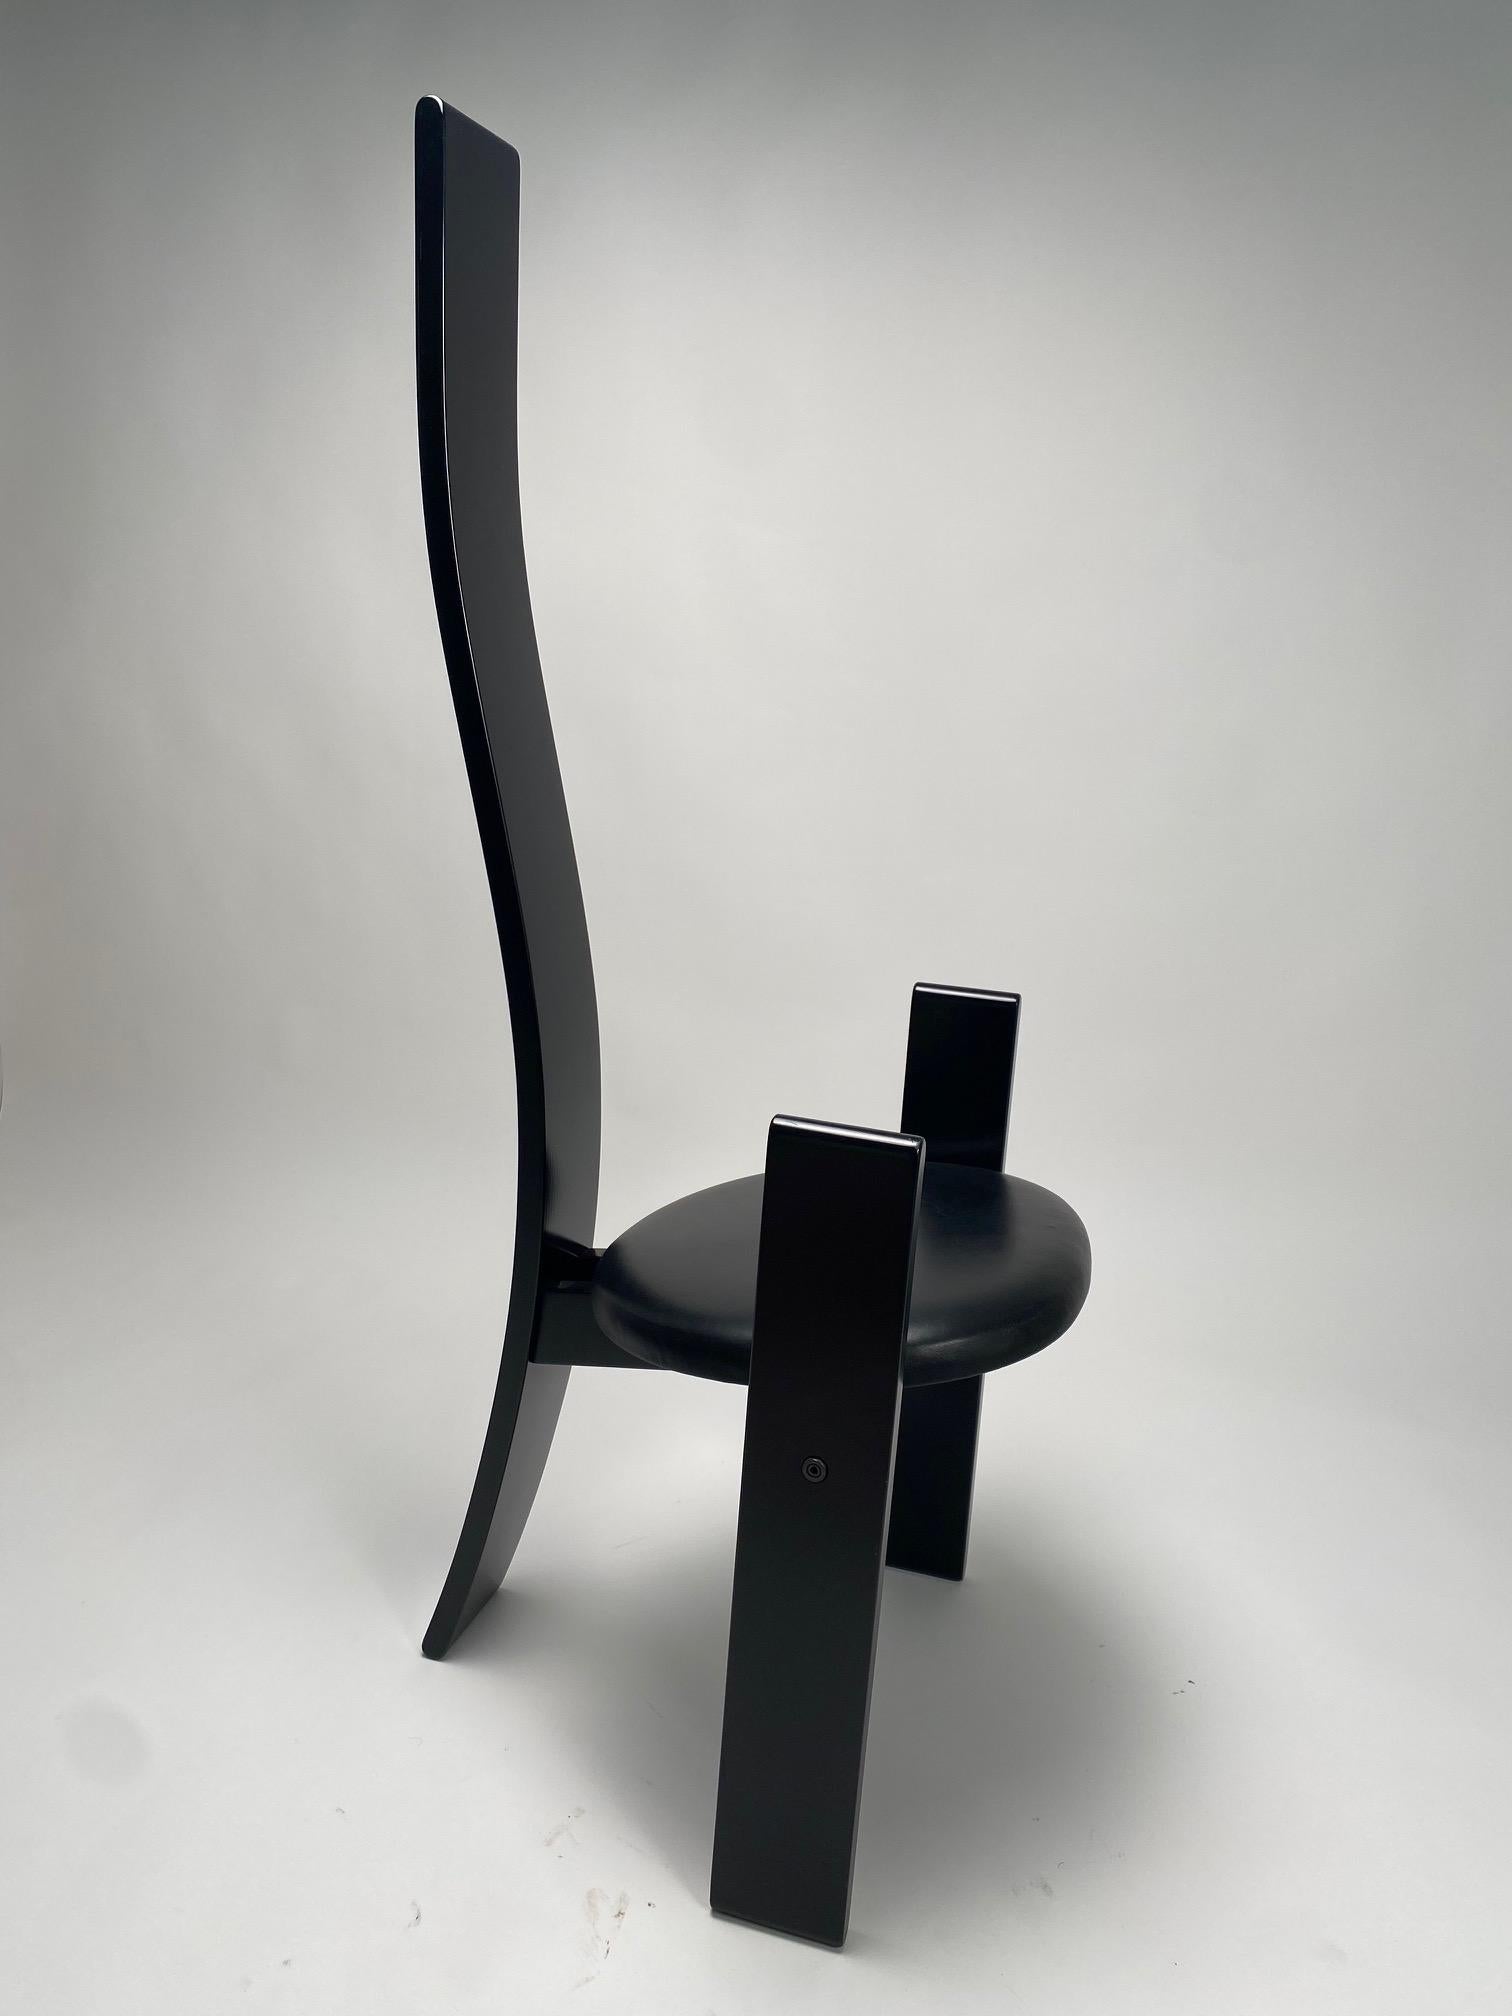 Der Stuhl Golem mit seiner hohen Rückenlehne aus lackiertem Holz entstand, wie Magistretti erklärt, aus dem Wunsch heraus, dem Designer Mackintosh zu huldigen, nachdem er eine Ausstellung über die Arbeit des schottischen Architekten besucht hatte.